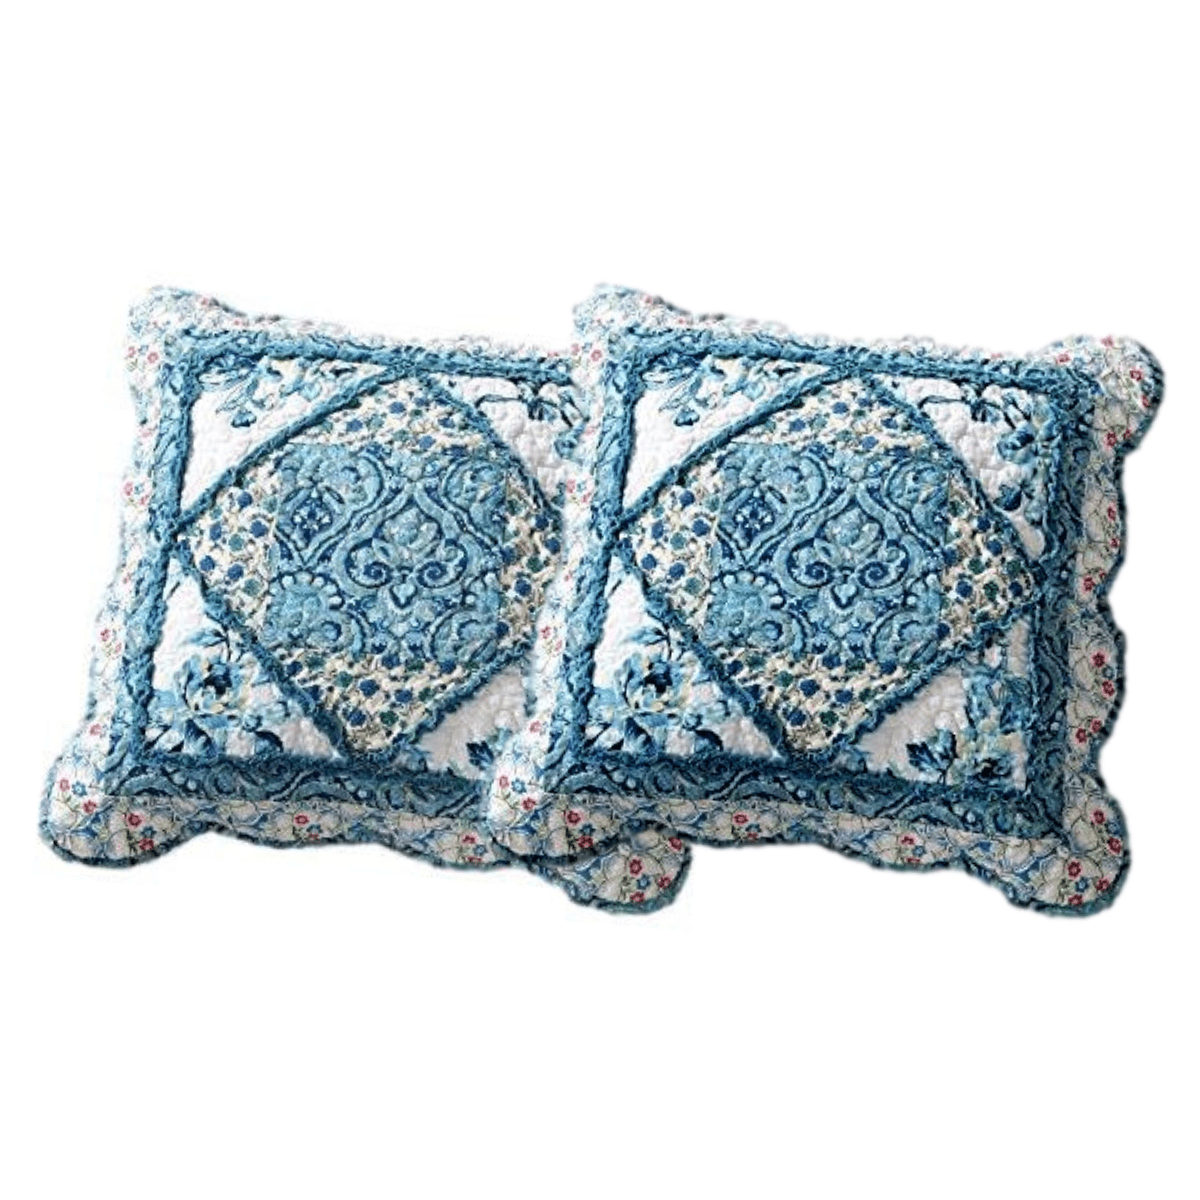 Tache Cotton Patchwork White Blue Floral Scalloped Petal Dance Cushion Covers / Euro Sham (JHW-646) - Tache Home Fashion